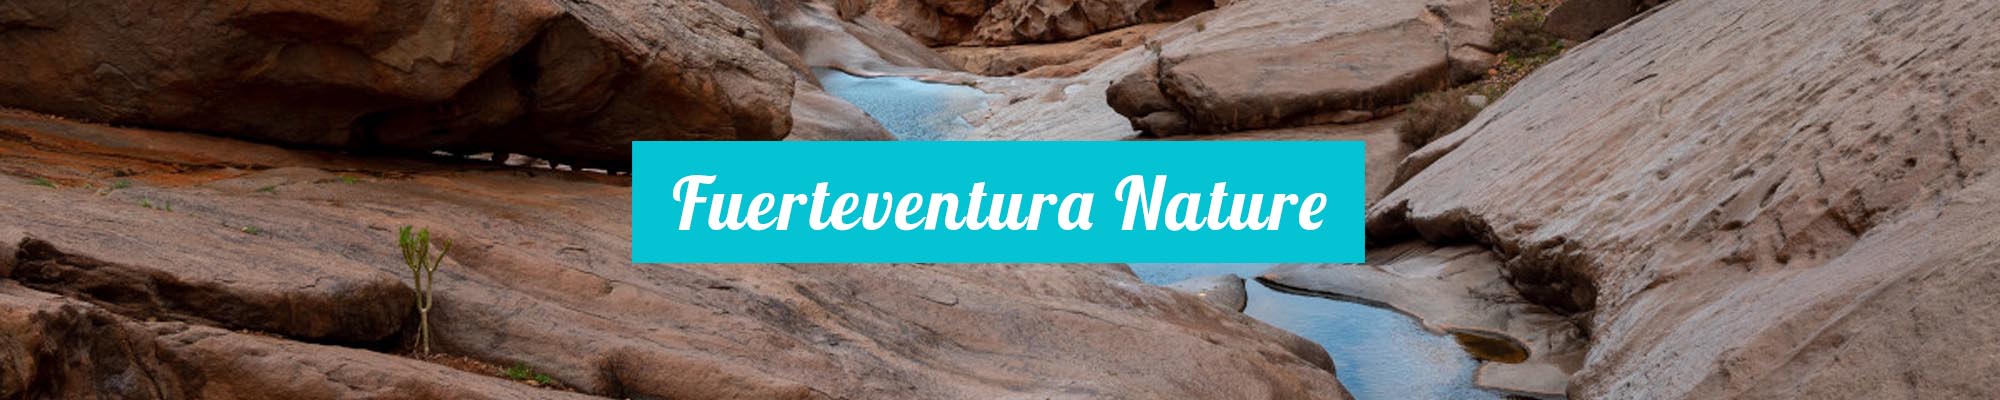 Fuerteventura Nature